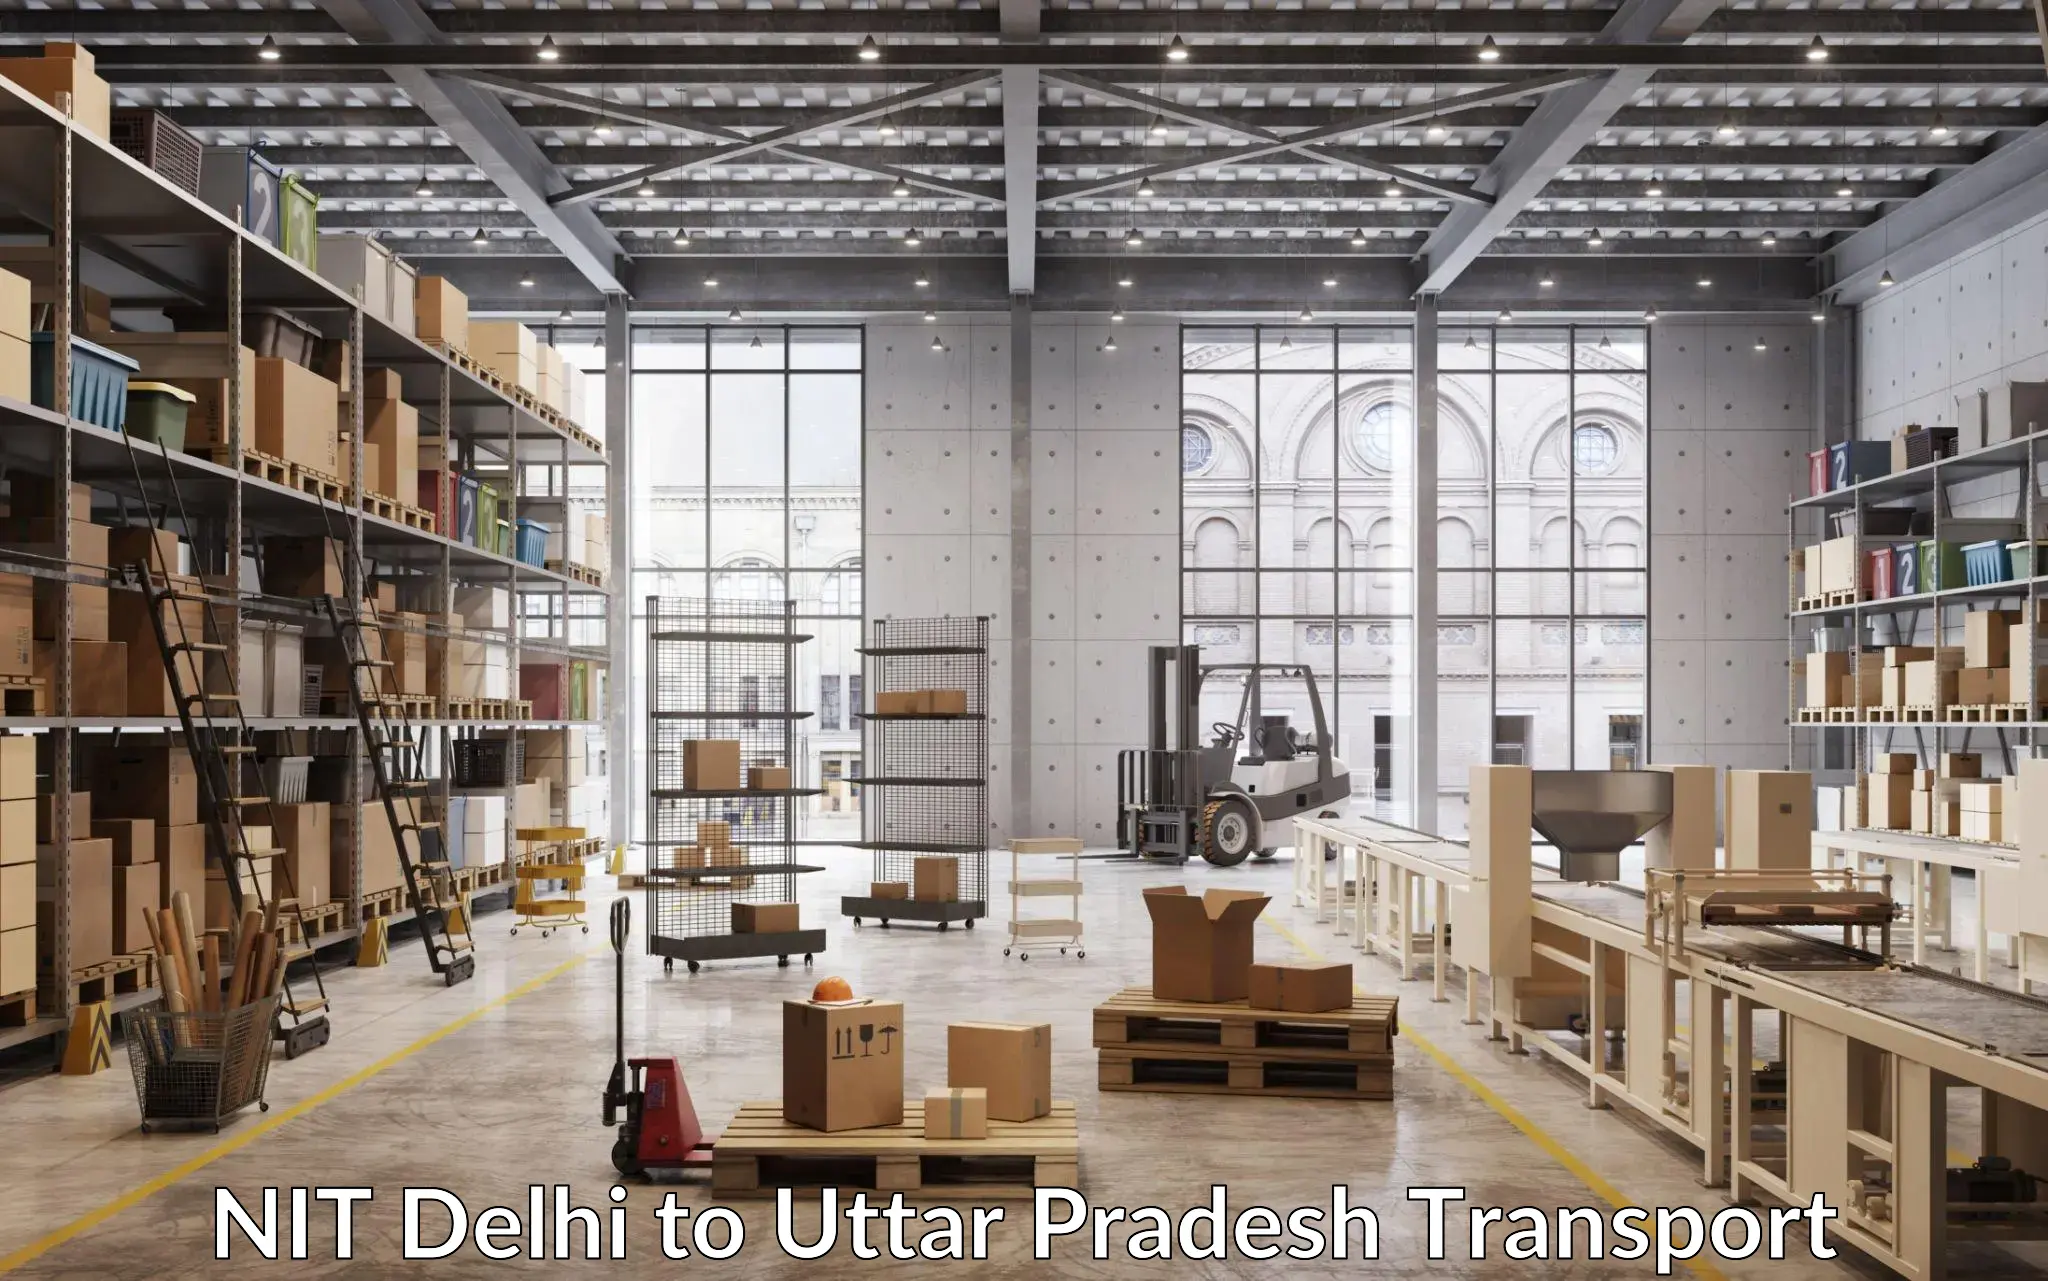 Container transportation services NIT Delhi to Uttar Pradesh